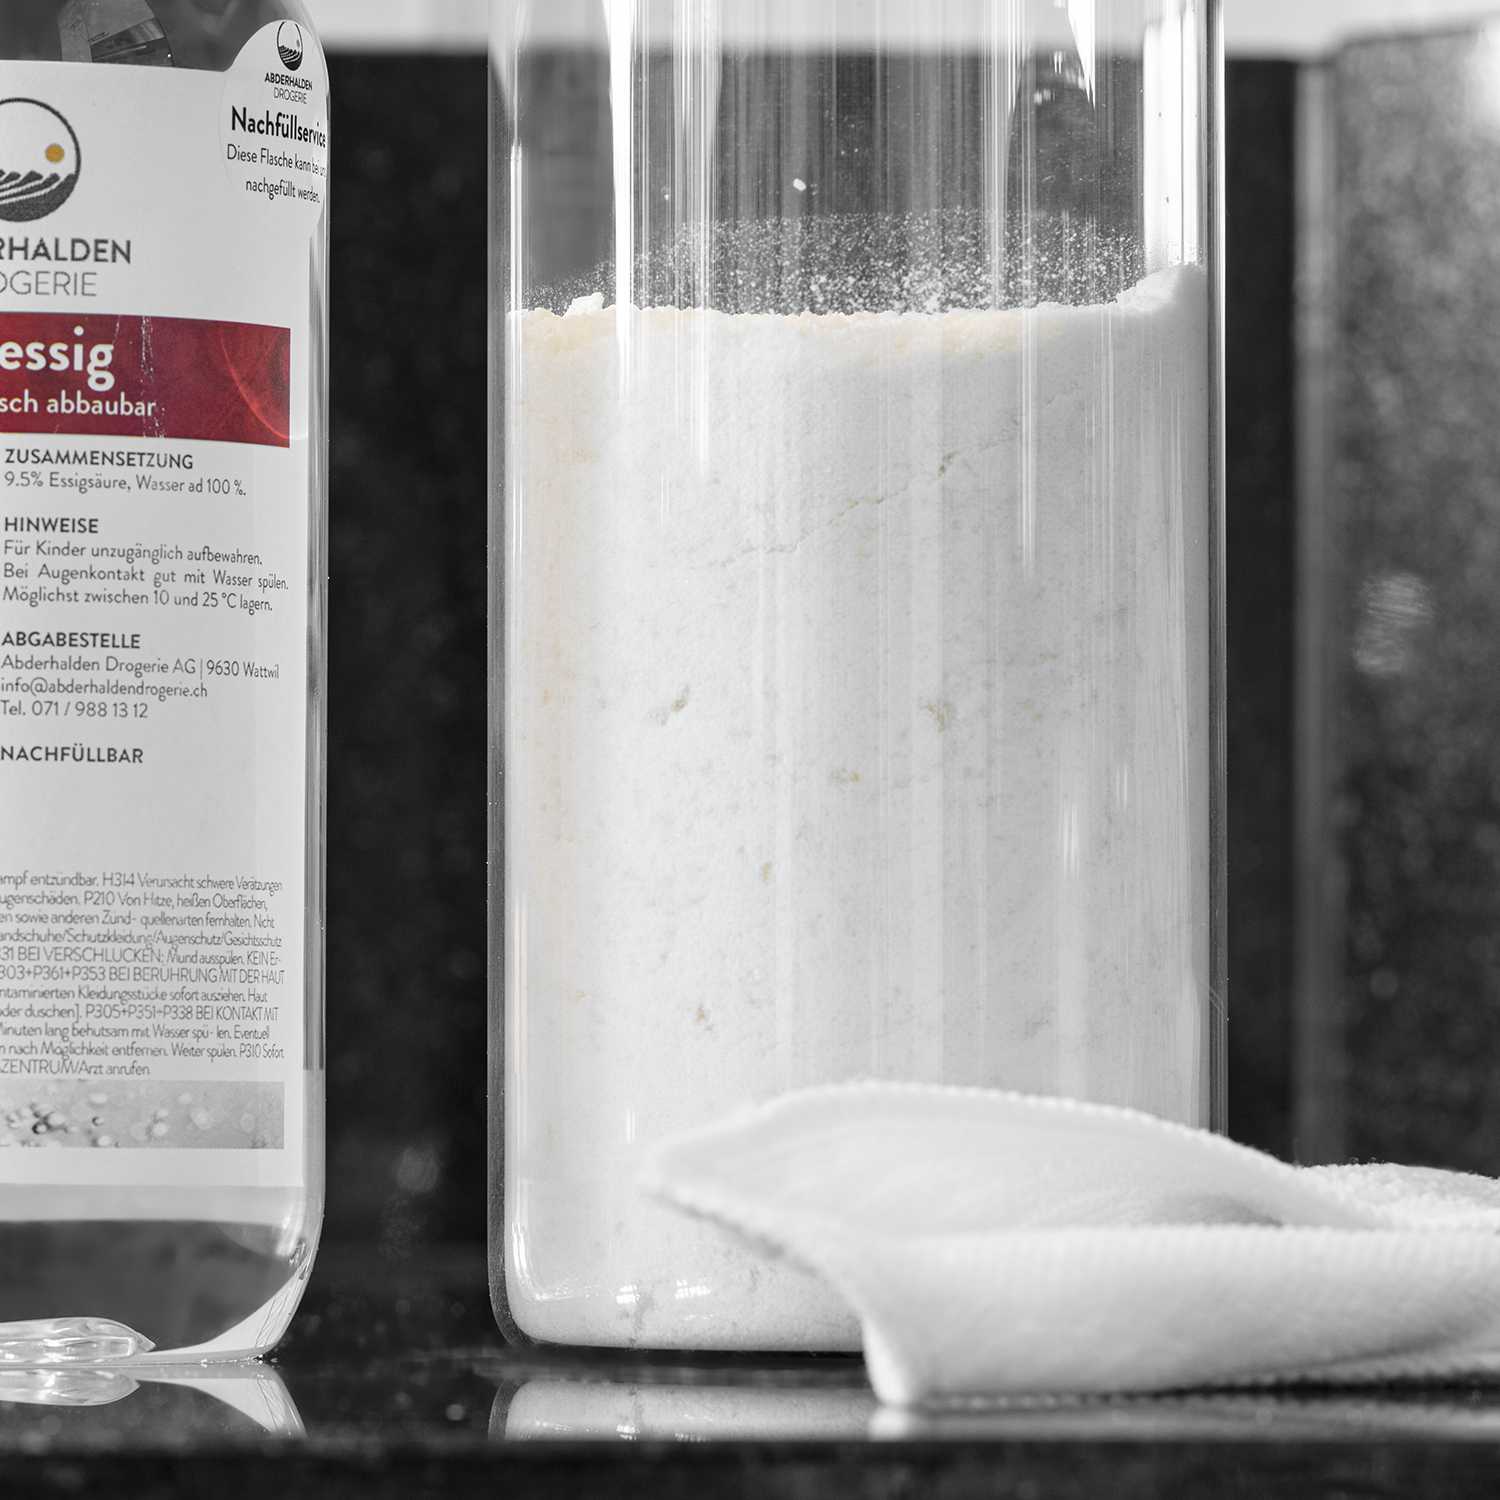 Fertiges Pulver-Weiss-Waschmittel in Glasgefäss, dahinter Putzessig-Flasche